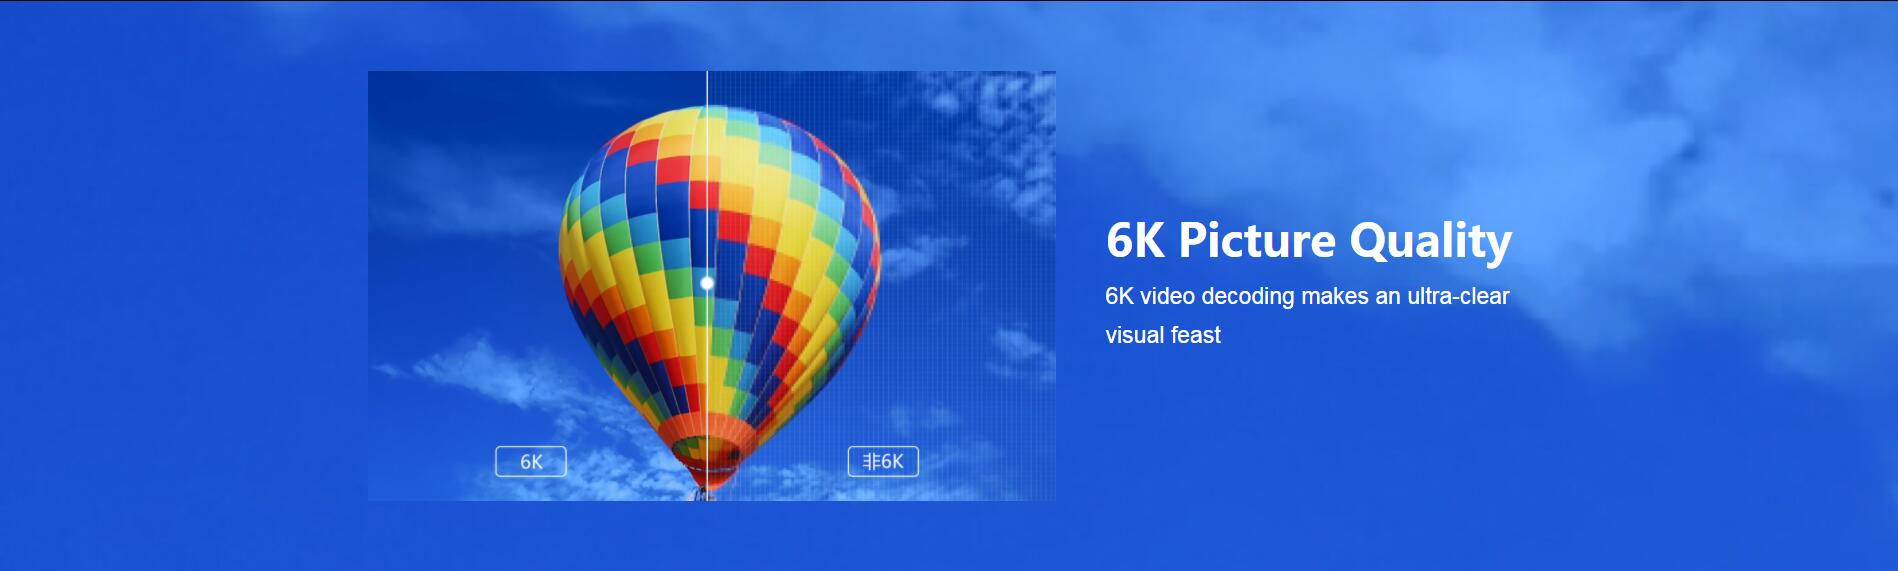 EVPAD 5Max TV Box - Calidad de imagen 6K